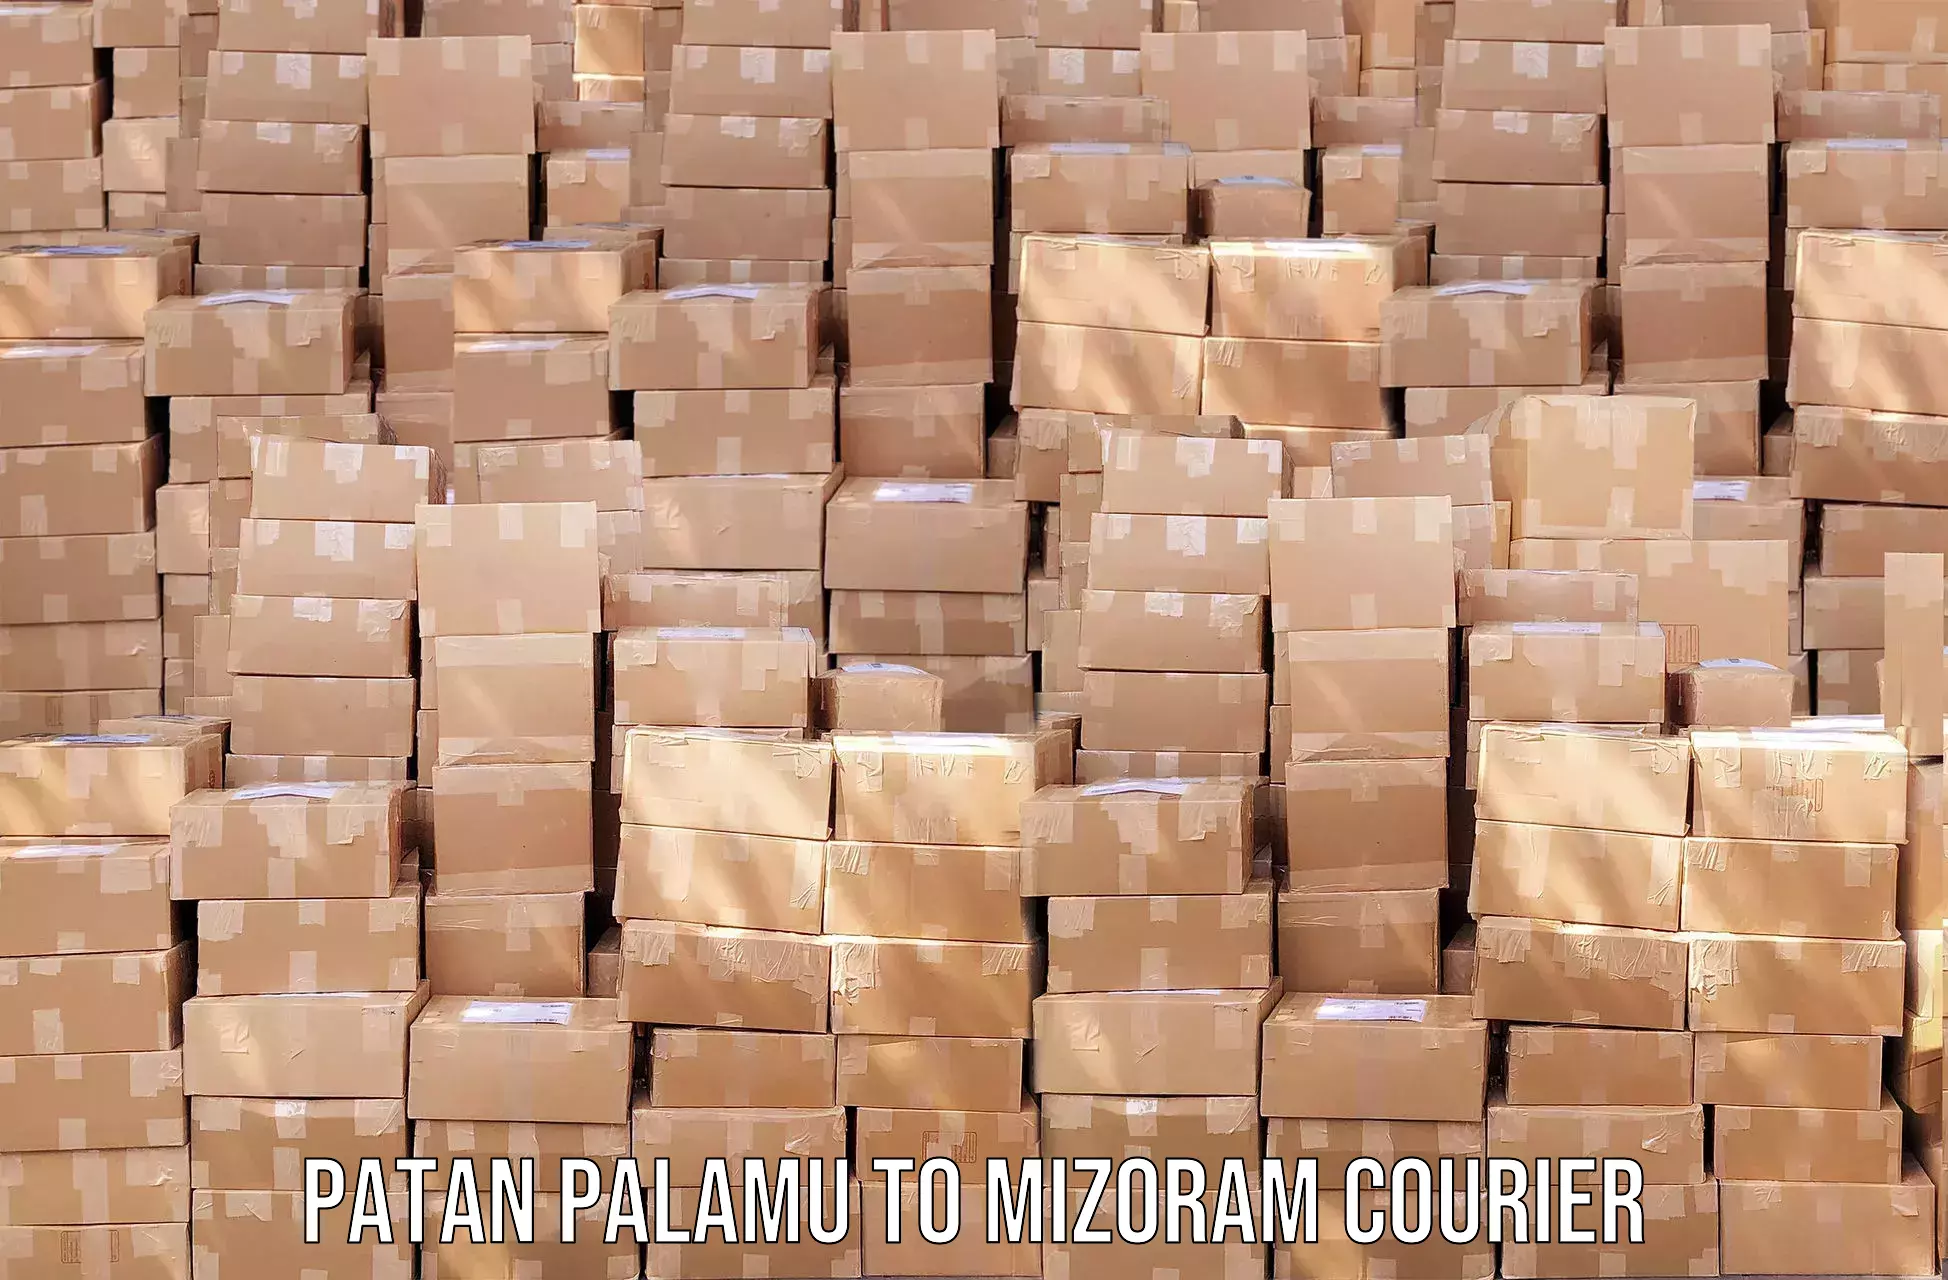 State-of-the-art courier technology Patan Palamu to Kolasib